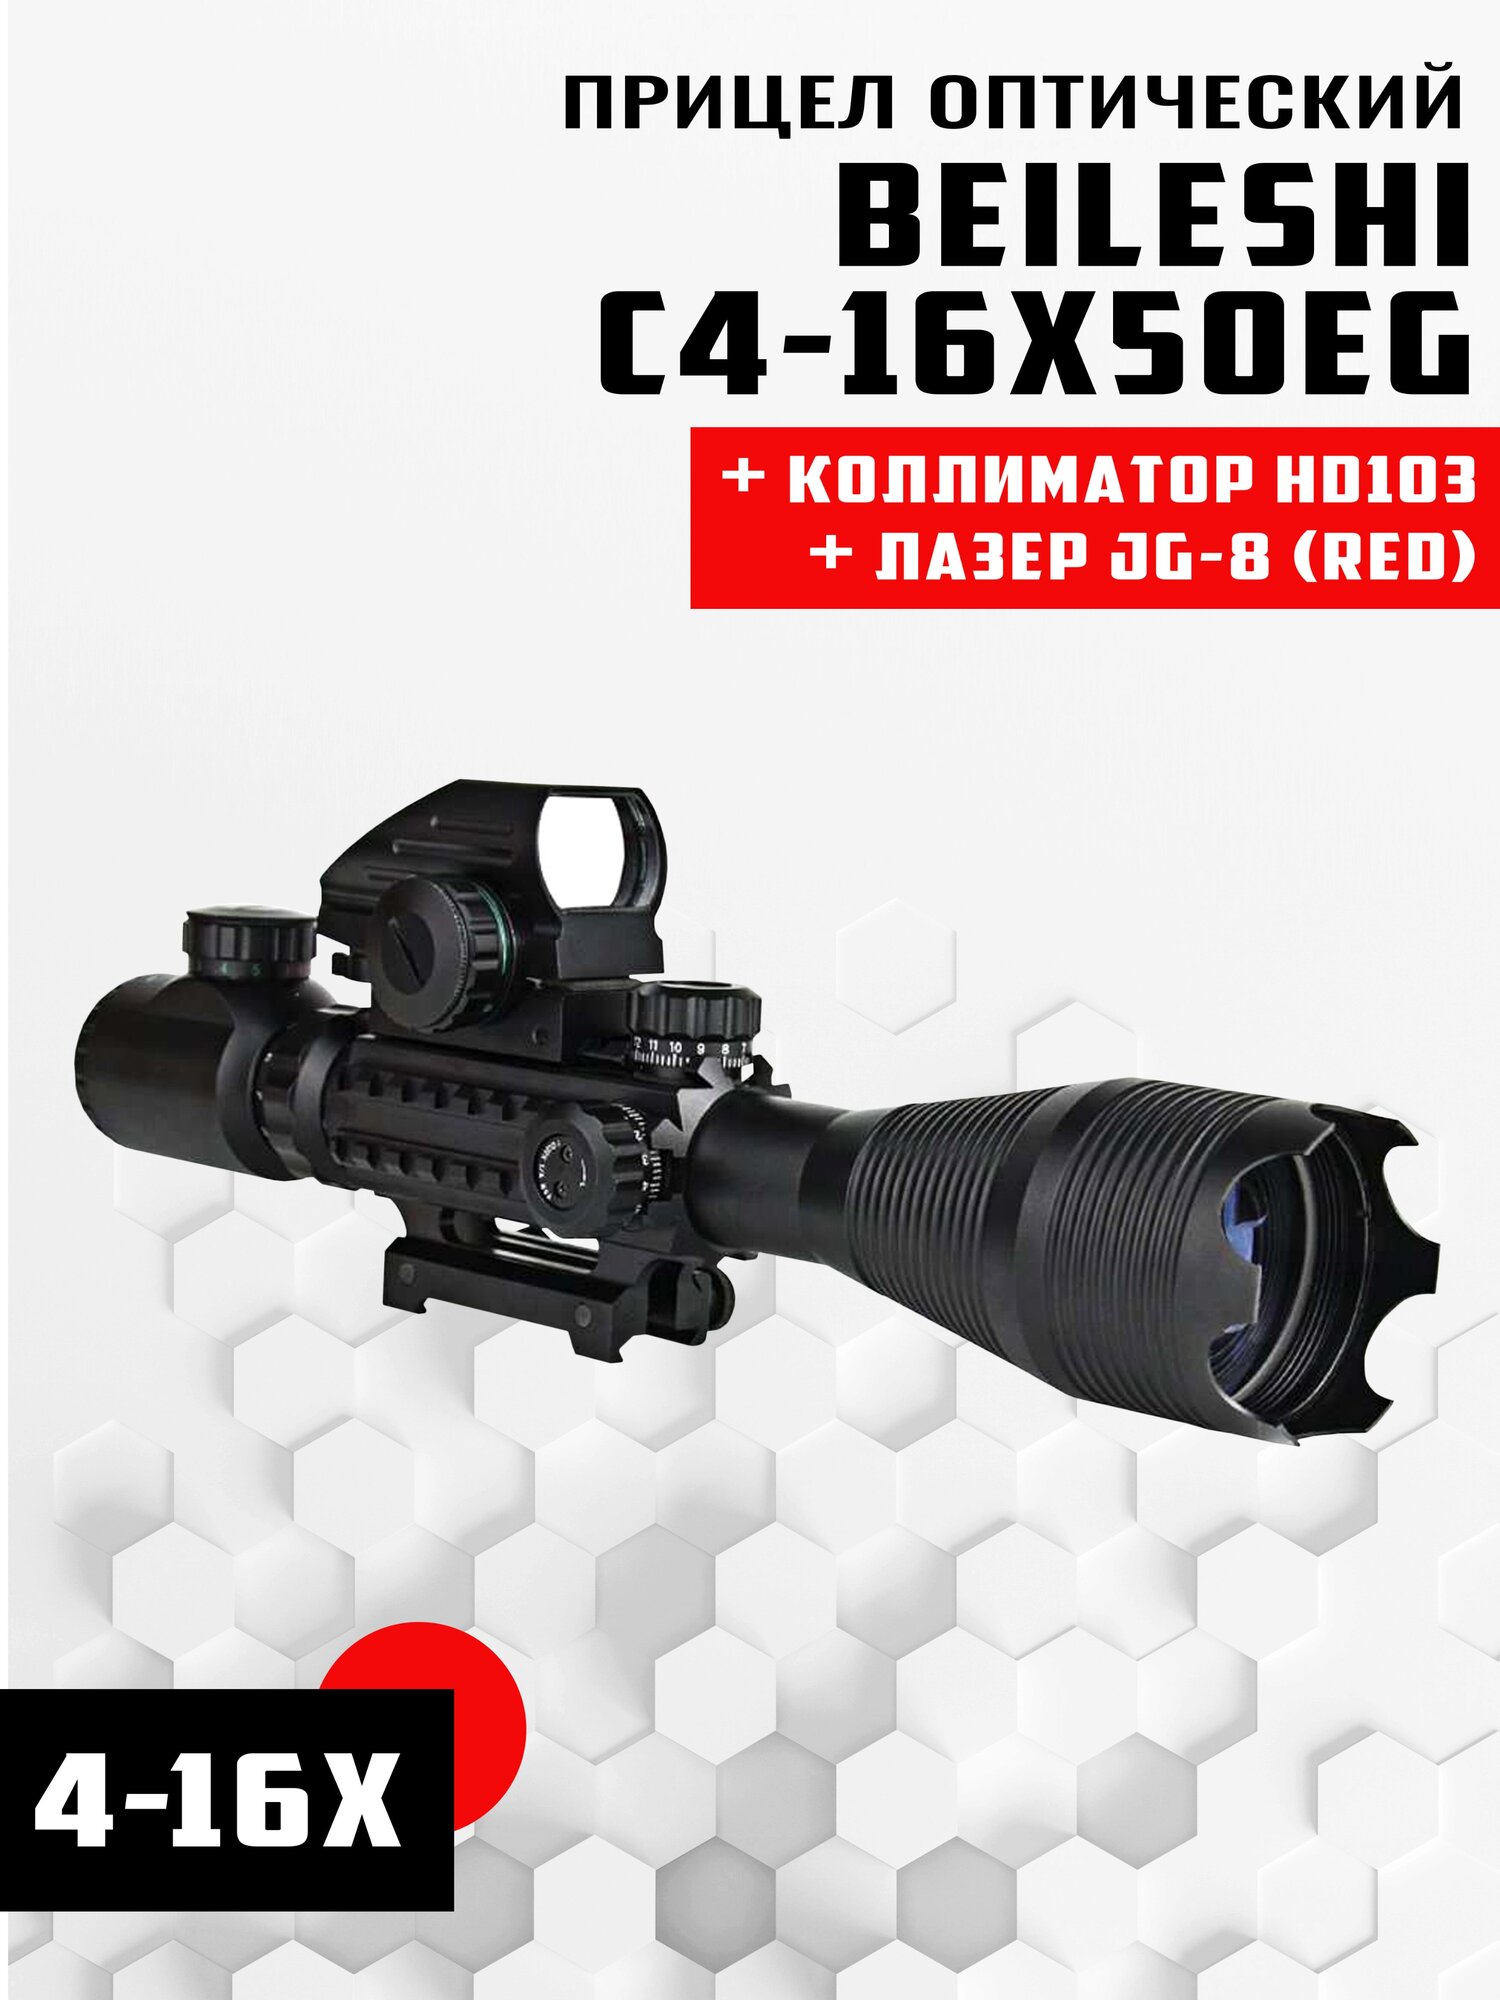 Прицел оптический Beileshi C4-16X50EG (Red)